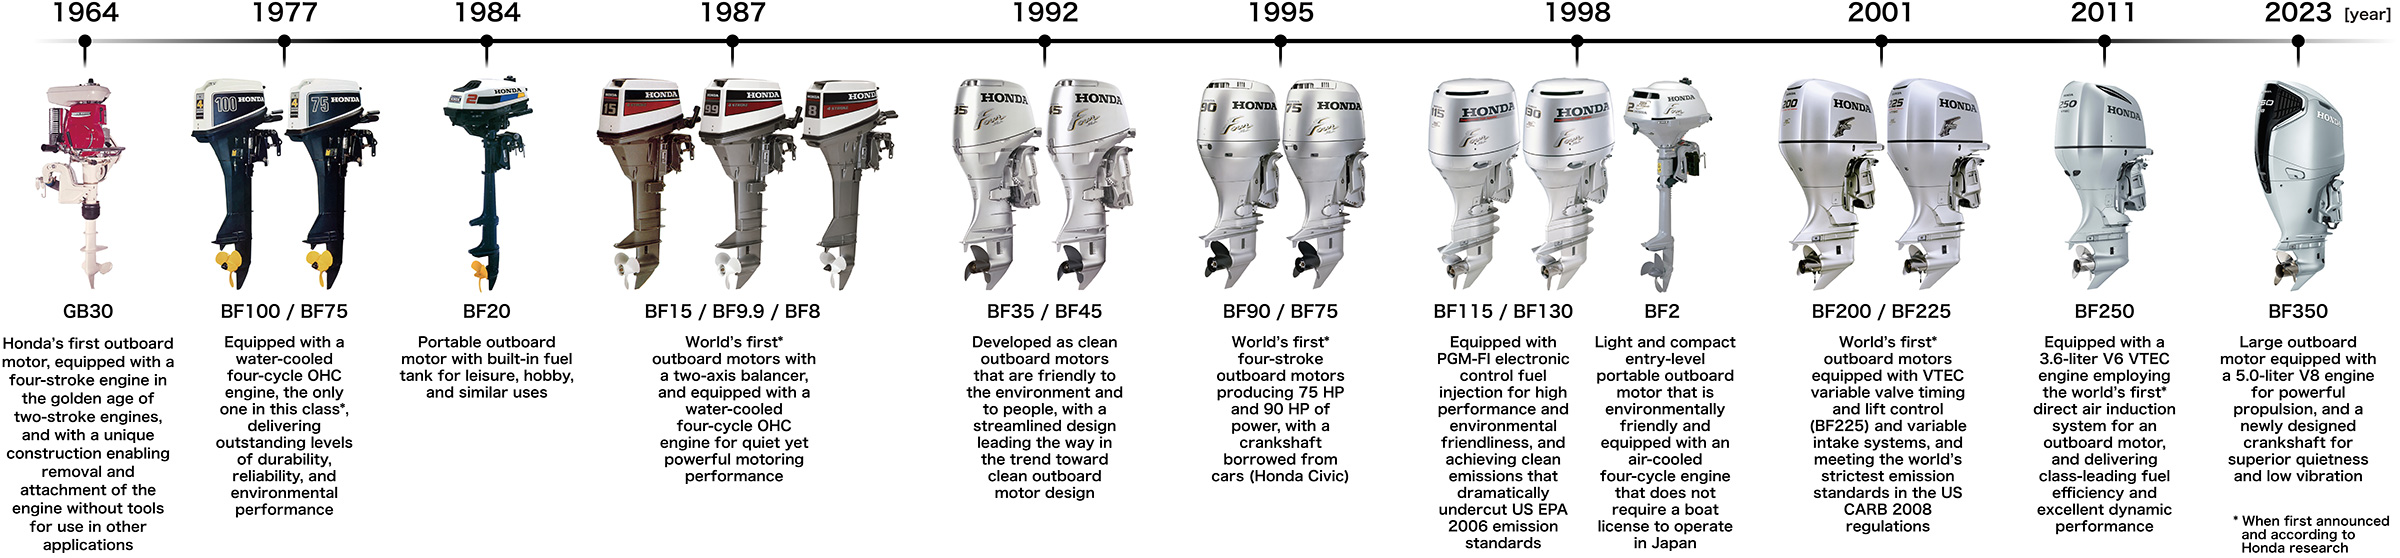 History of Honda Outboard Motors